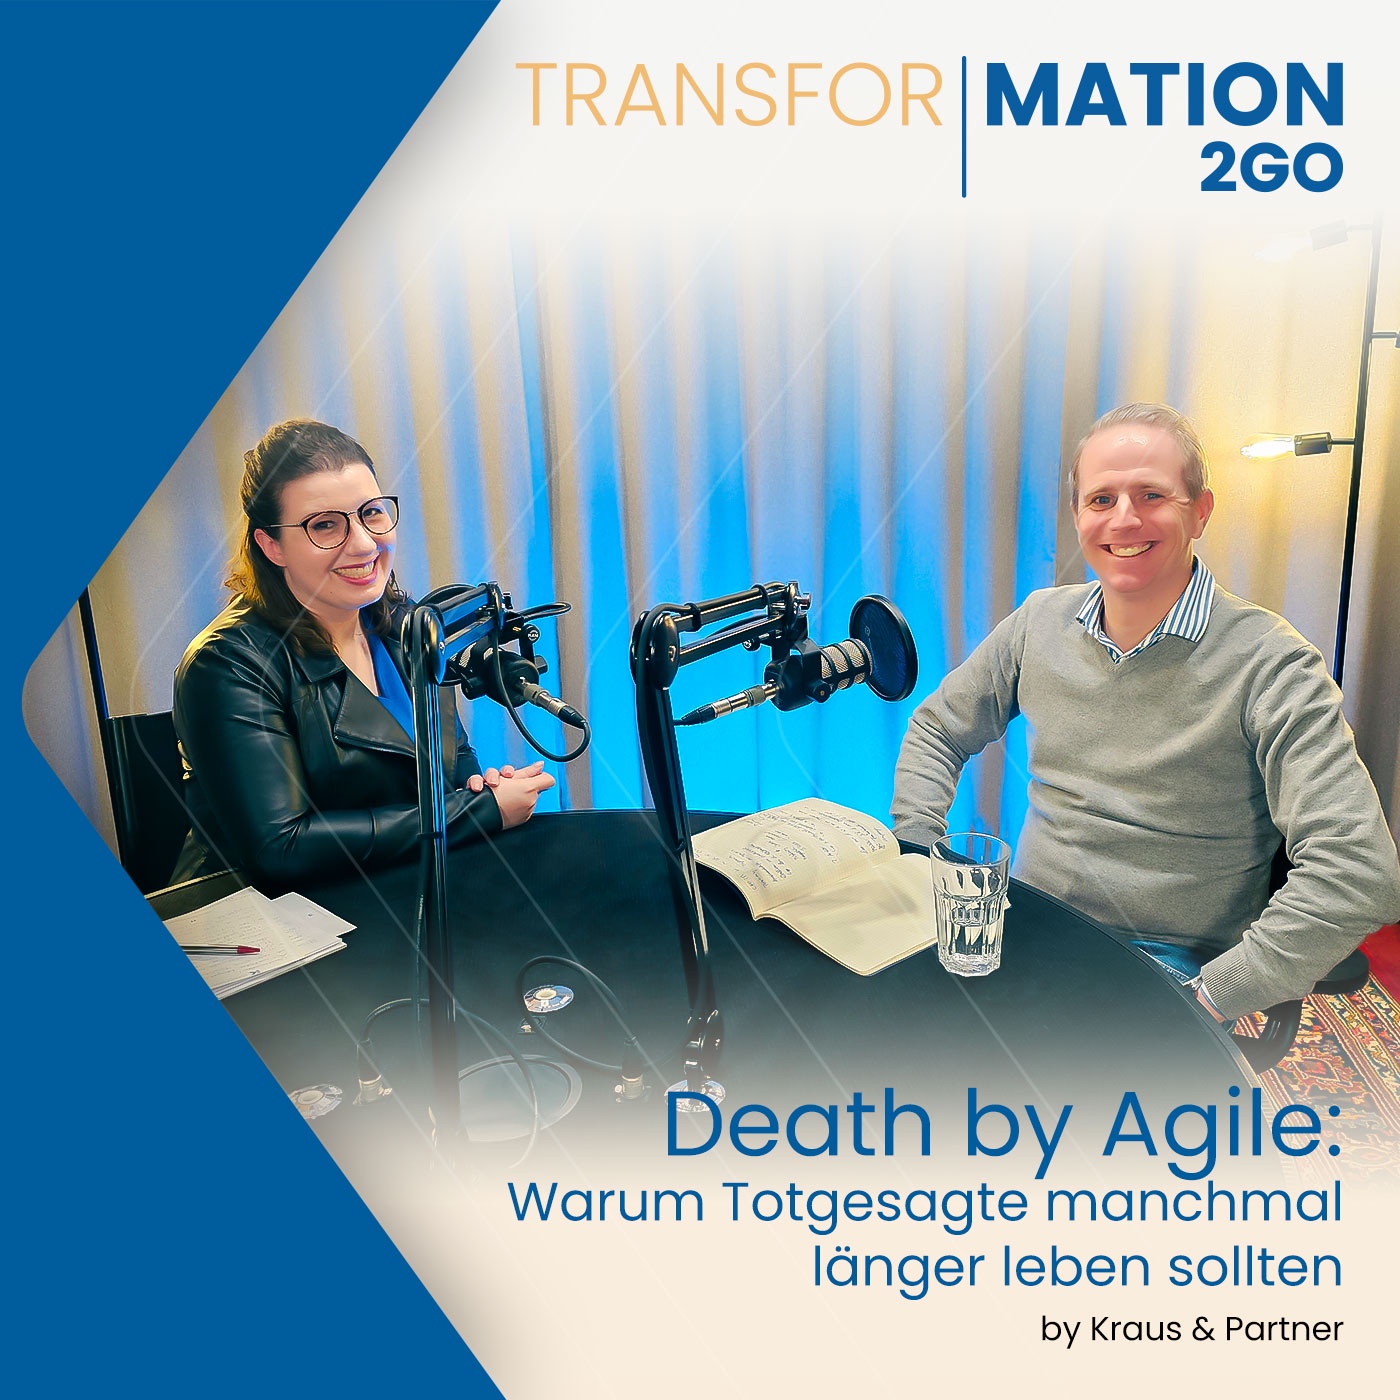 Death by Agile: Warum Totgesagte manchmal länger leben sollten